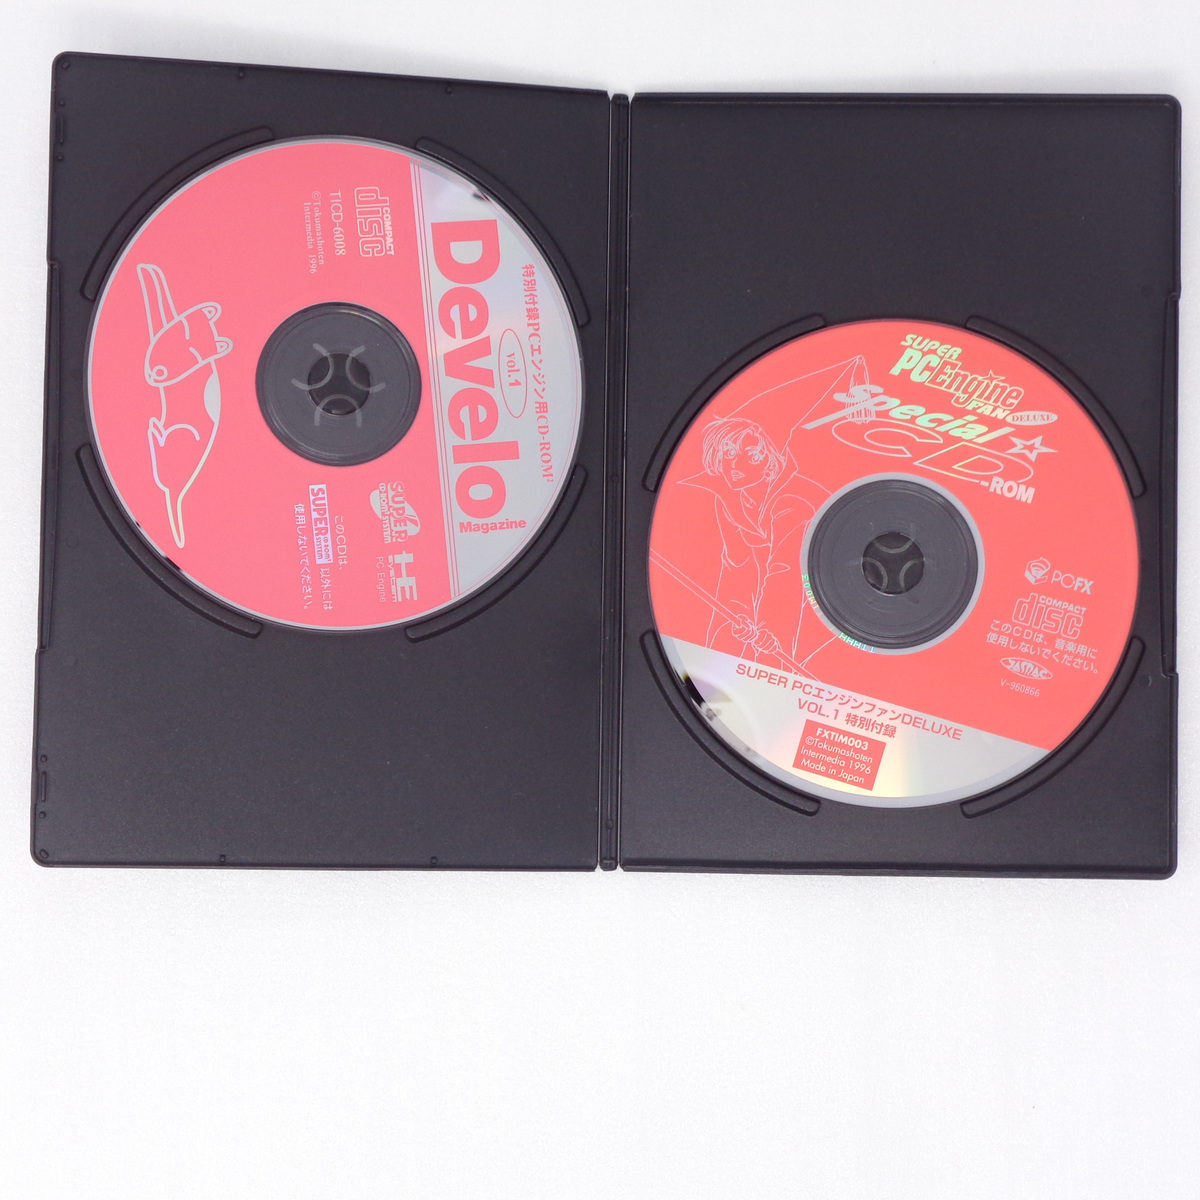 [送料無料 即決]SUPER PC Engine FAN DELUXE Vol.1 CD-ROM2枚付き /でべろマガジン出張所/PCエンジンFAN/GameMagazine/ゲーム雑誌_画像6